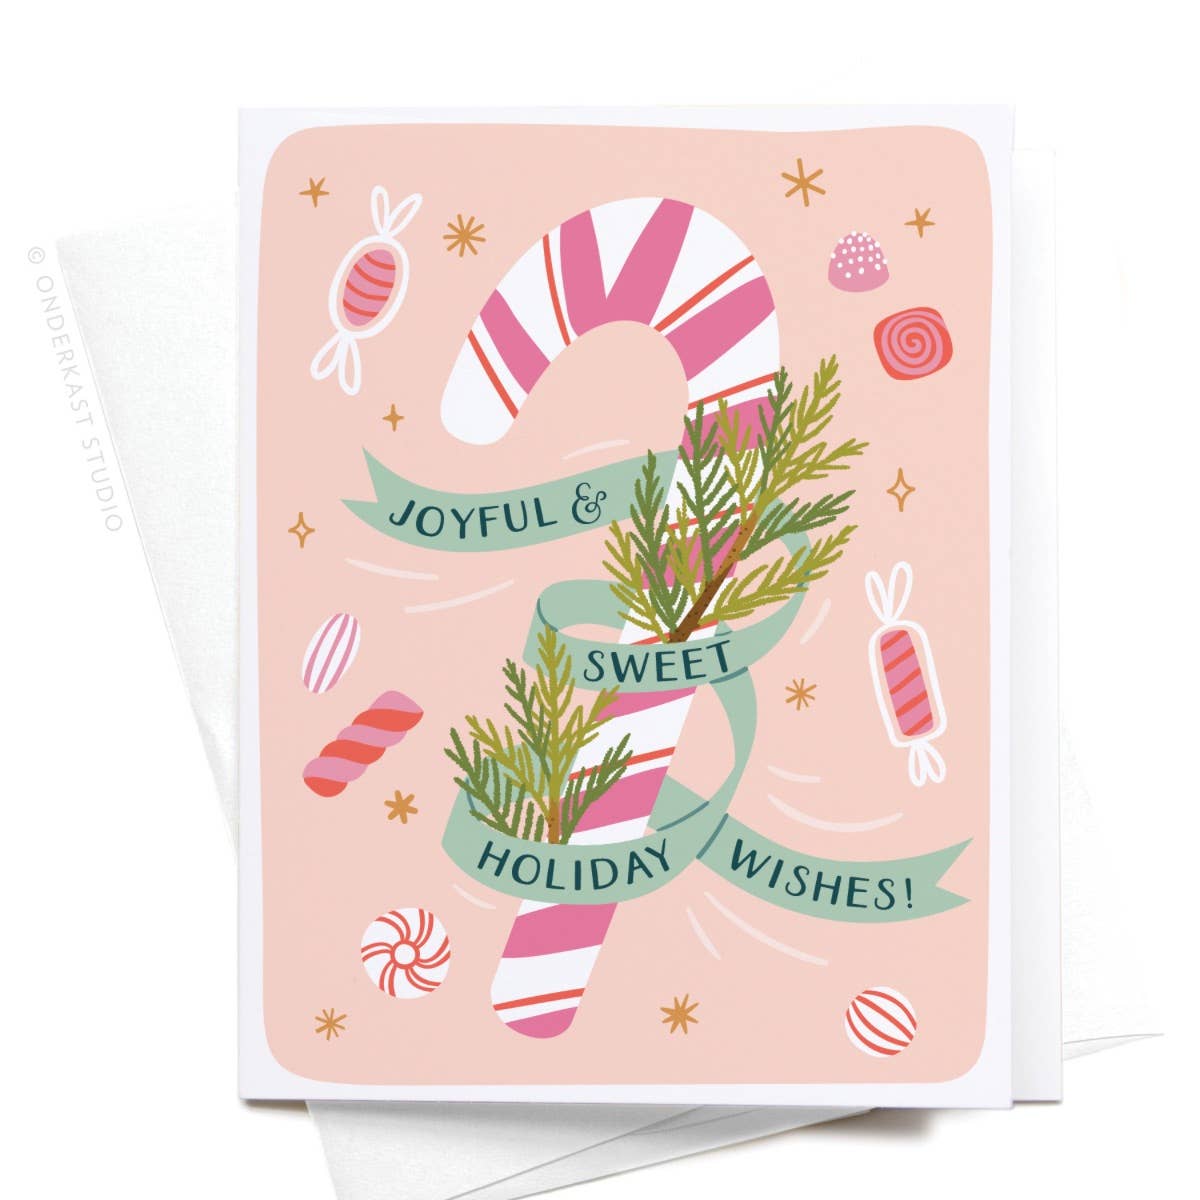 Joyful & Sweet Holiday Wishes! Candy Cane Greeting Card